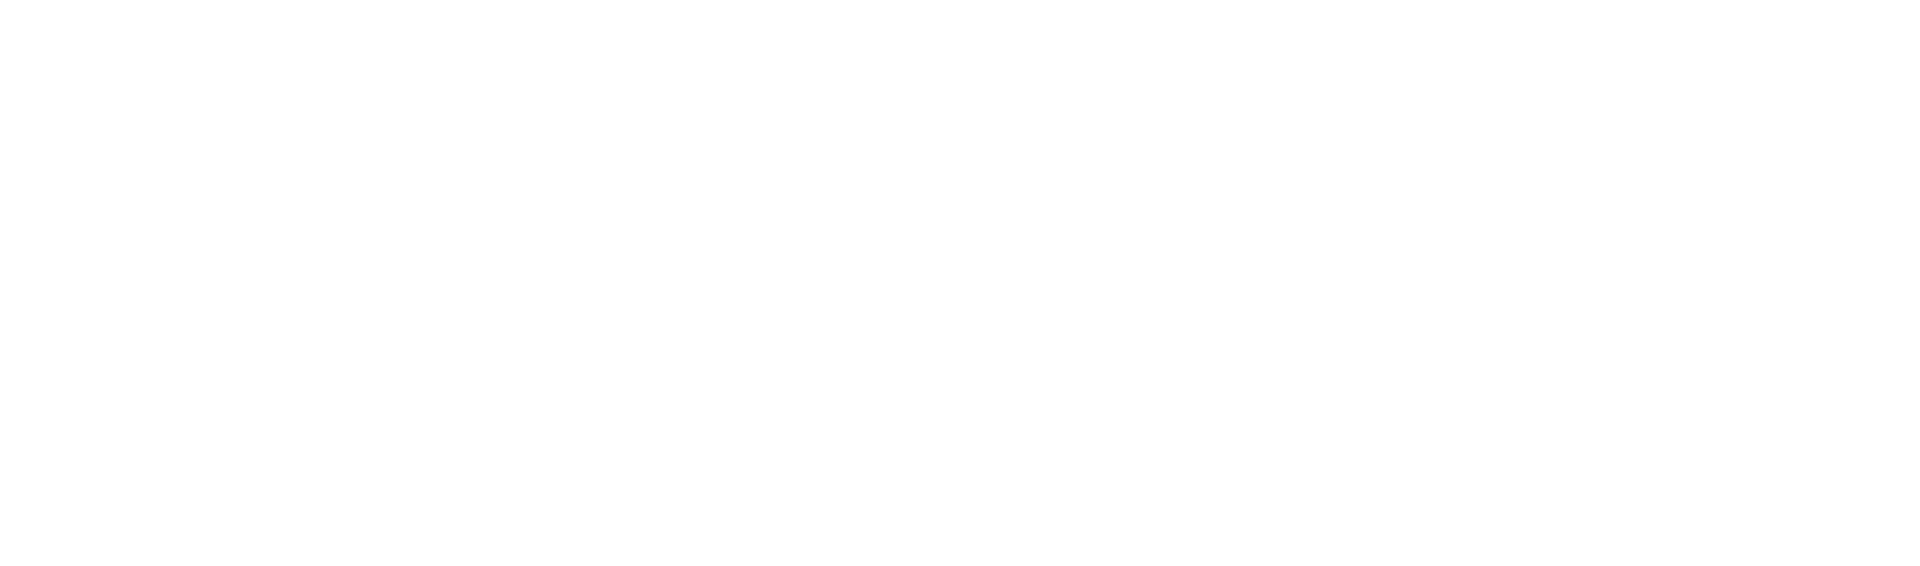 wolfpac-essentials-logo-final-white